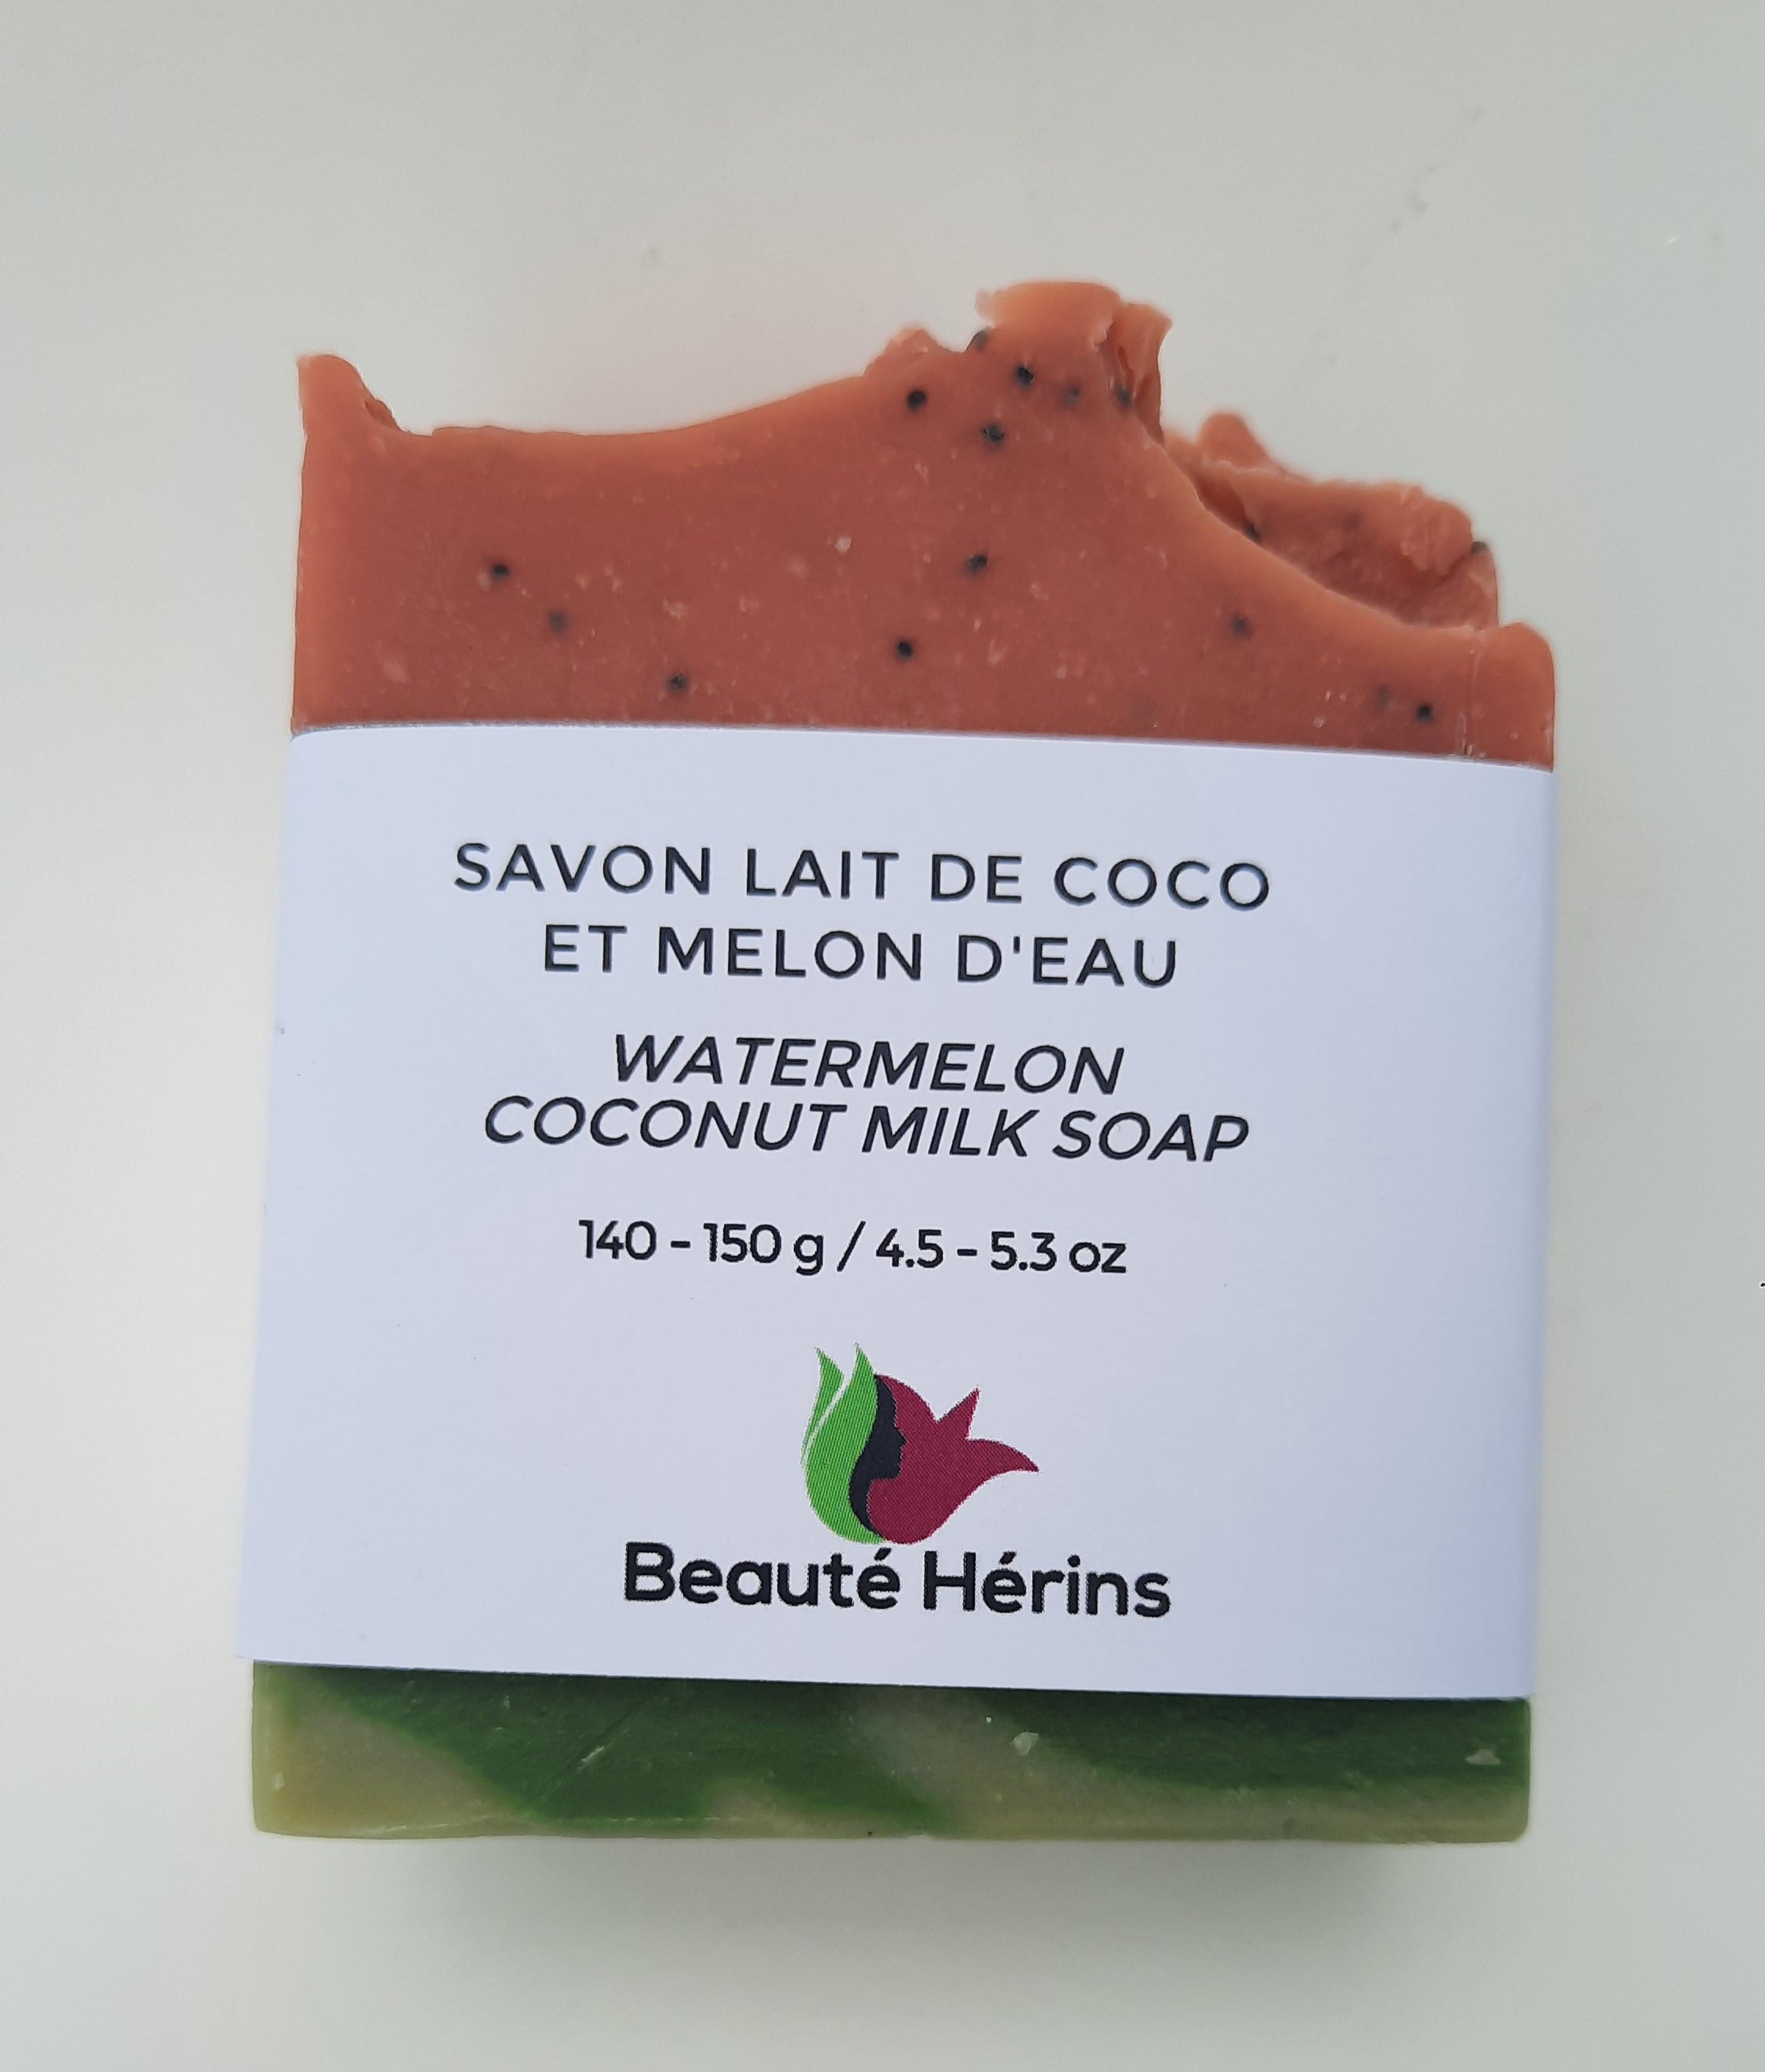 Coconut milk and watermelon soap - 140-150g